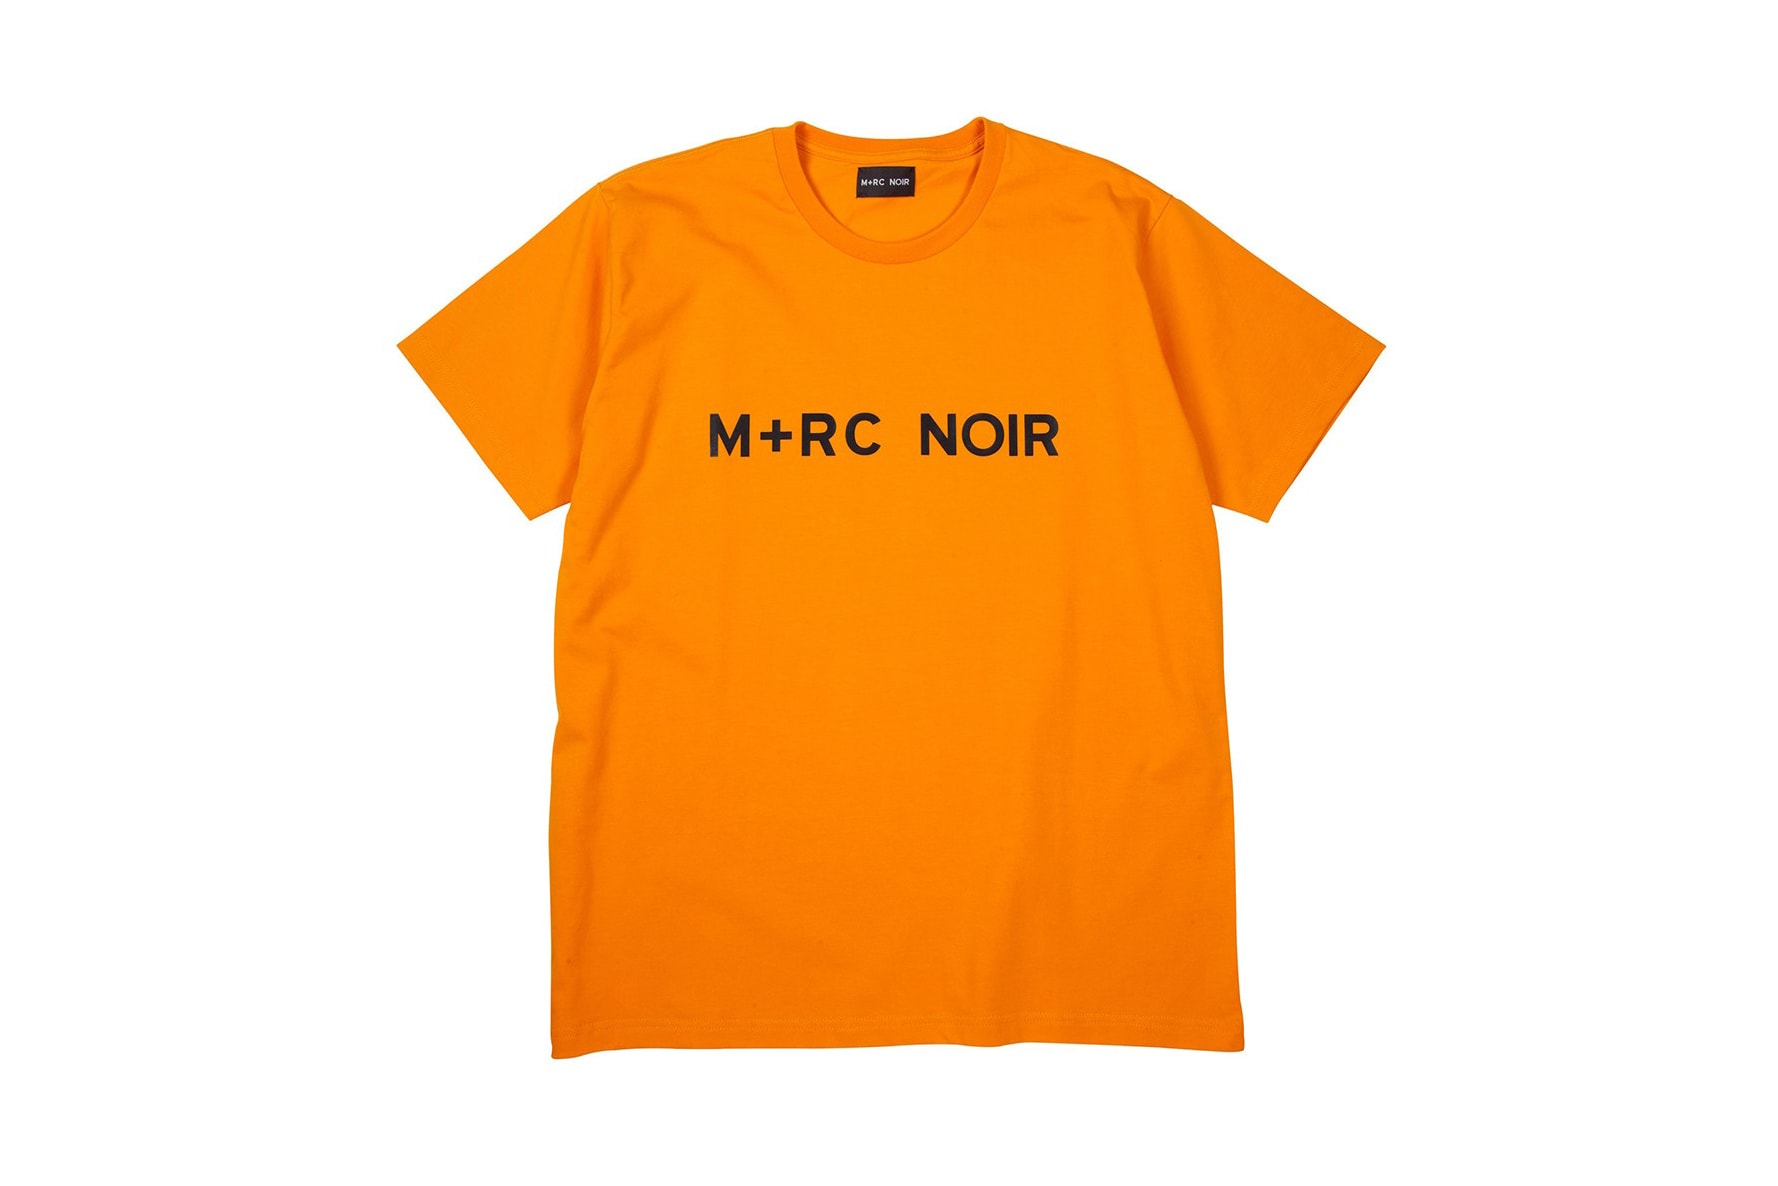 M+RC Noir Fall Winter 2017 Second Drop December 26 2017 Online Release